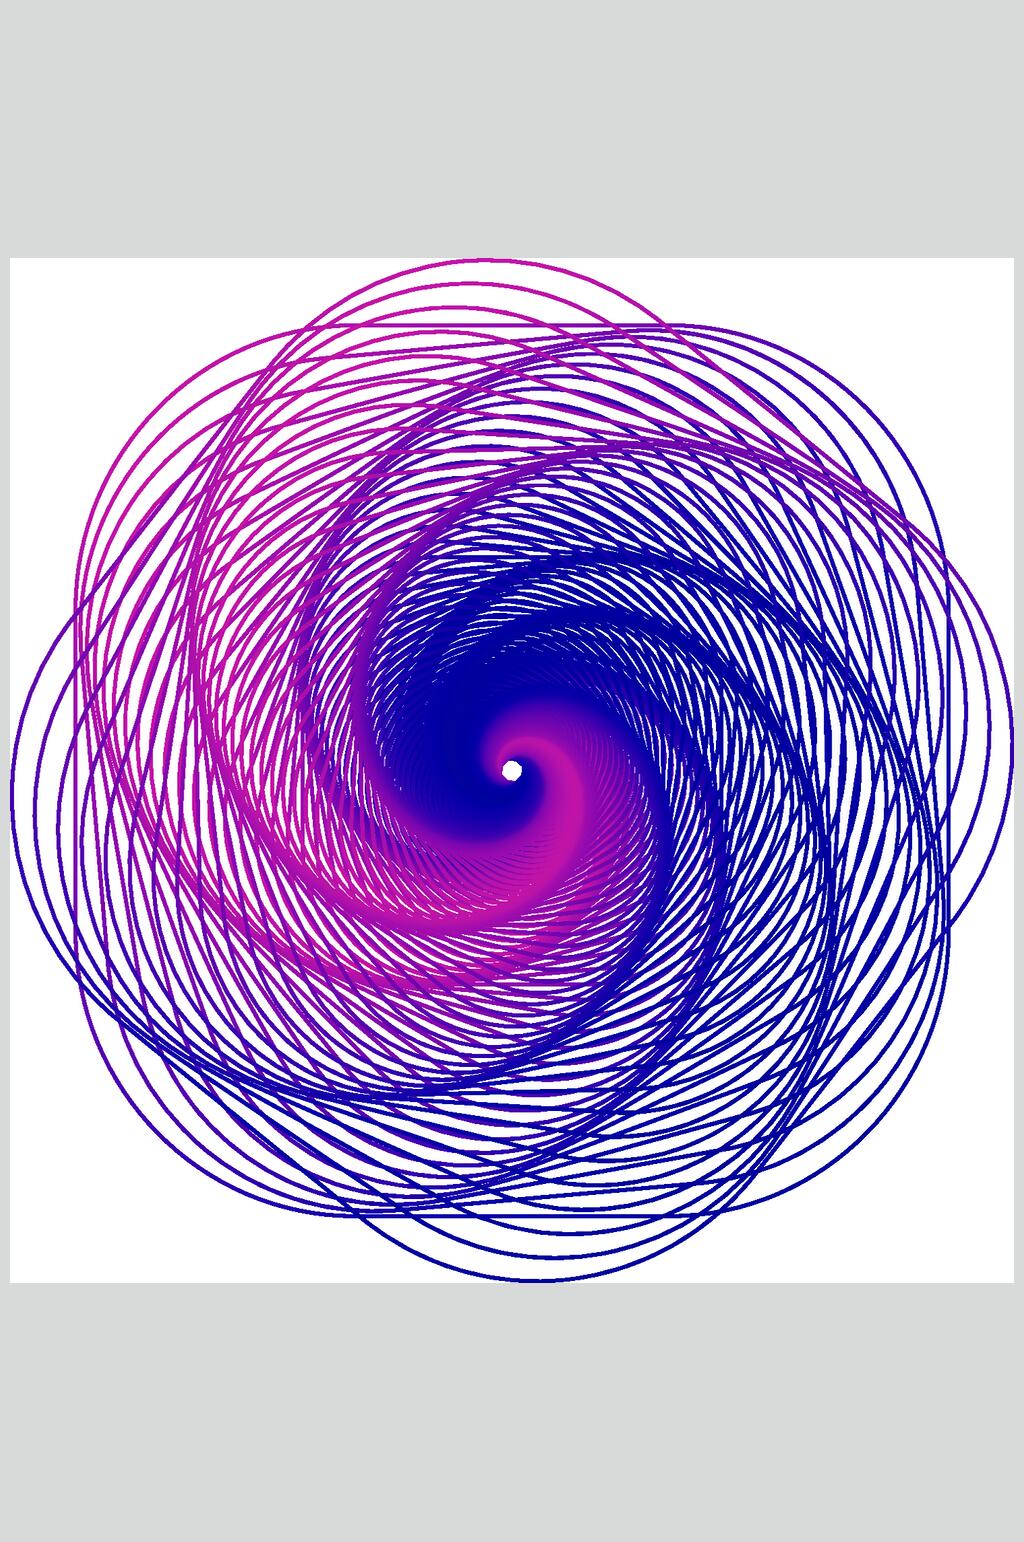 漩涡抽象线性图形矢量素材